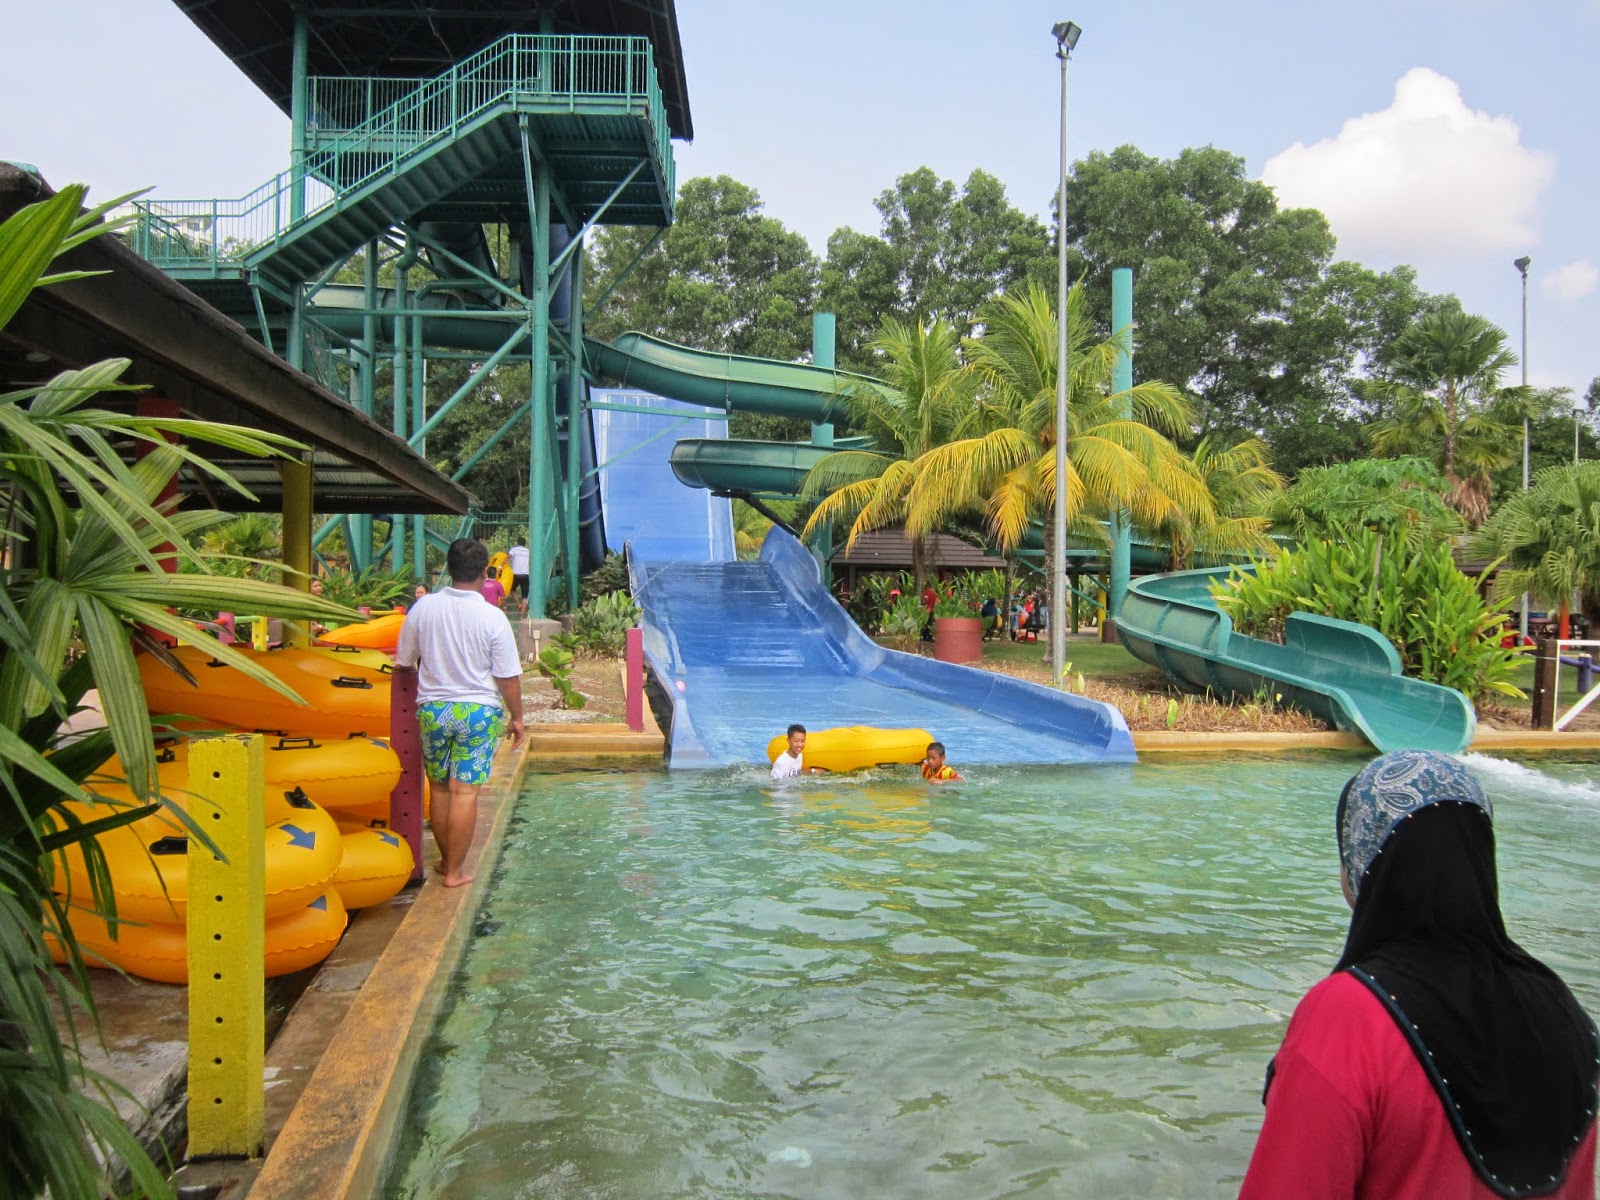 The Carnival Waterpark Sungai Petani